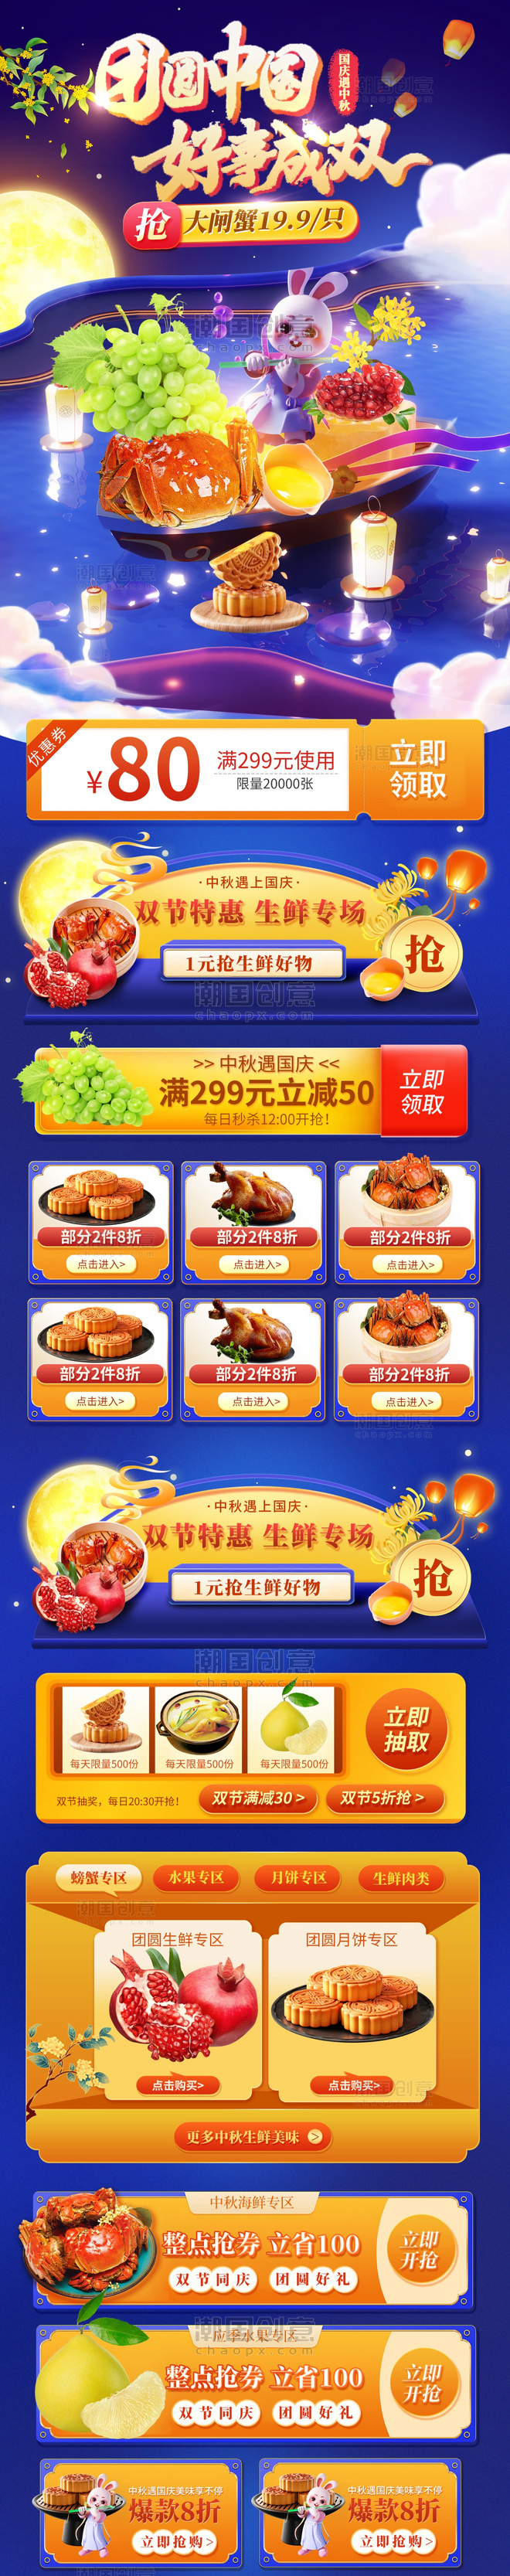 中国国庆双节中国风餐饮食品生鲜电商首页